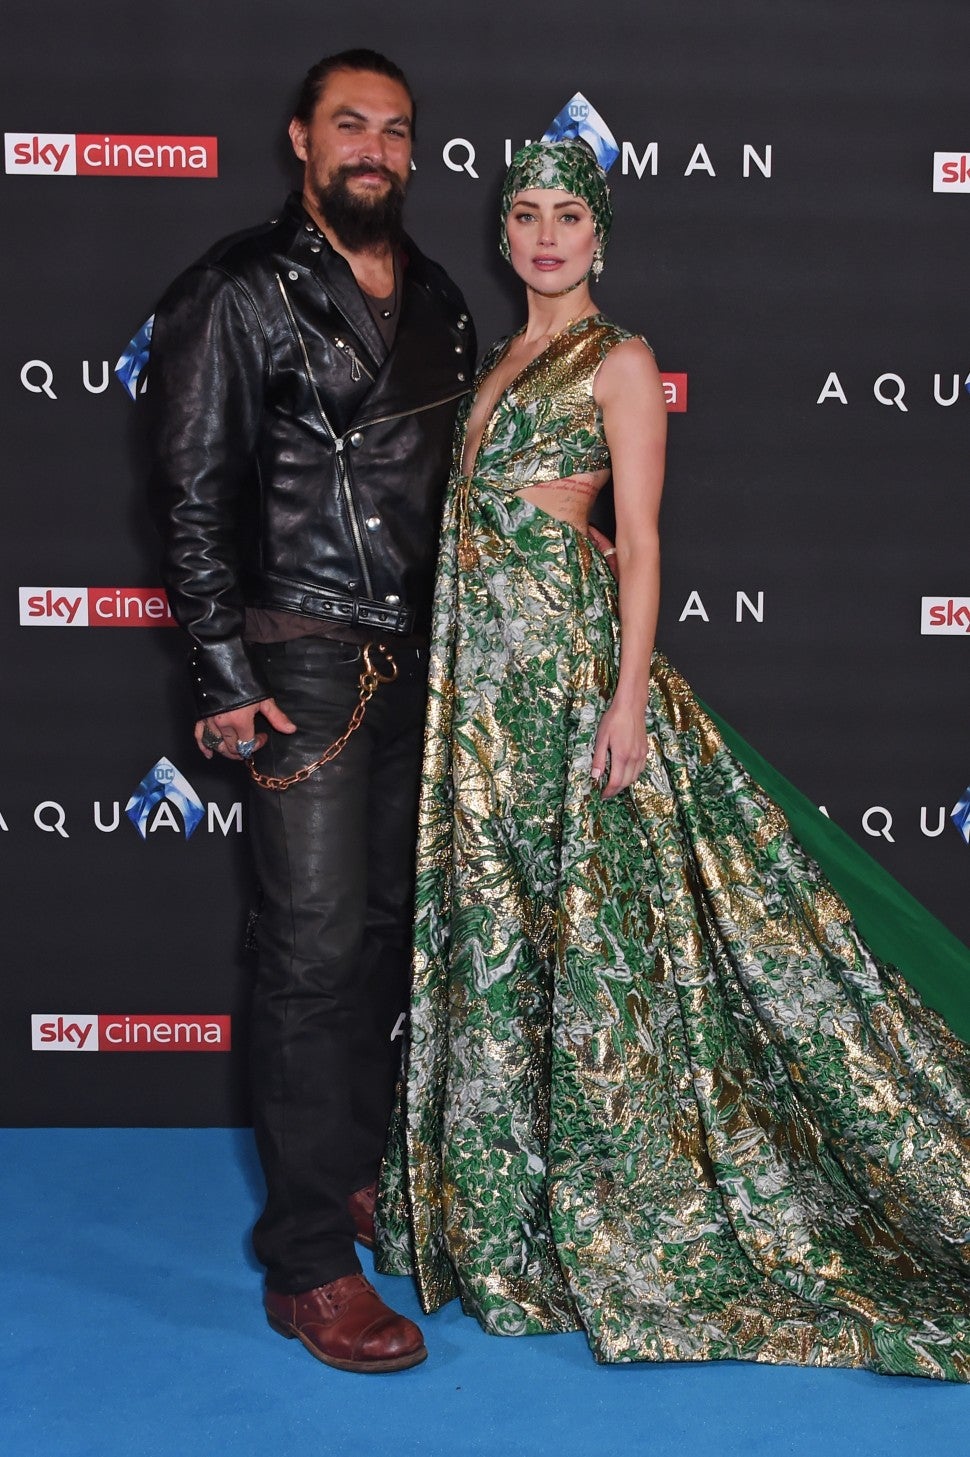 Jason Momoa and Amber Heard at Aquaman London premiere